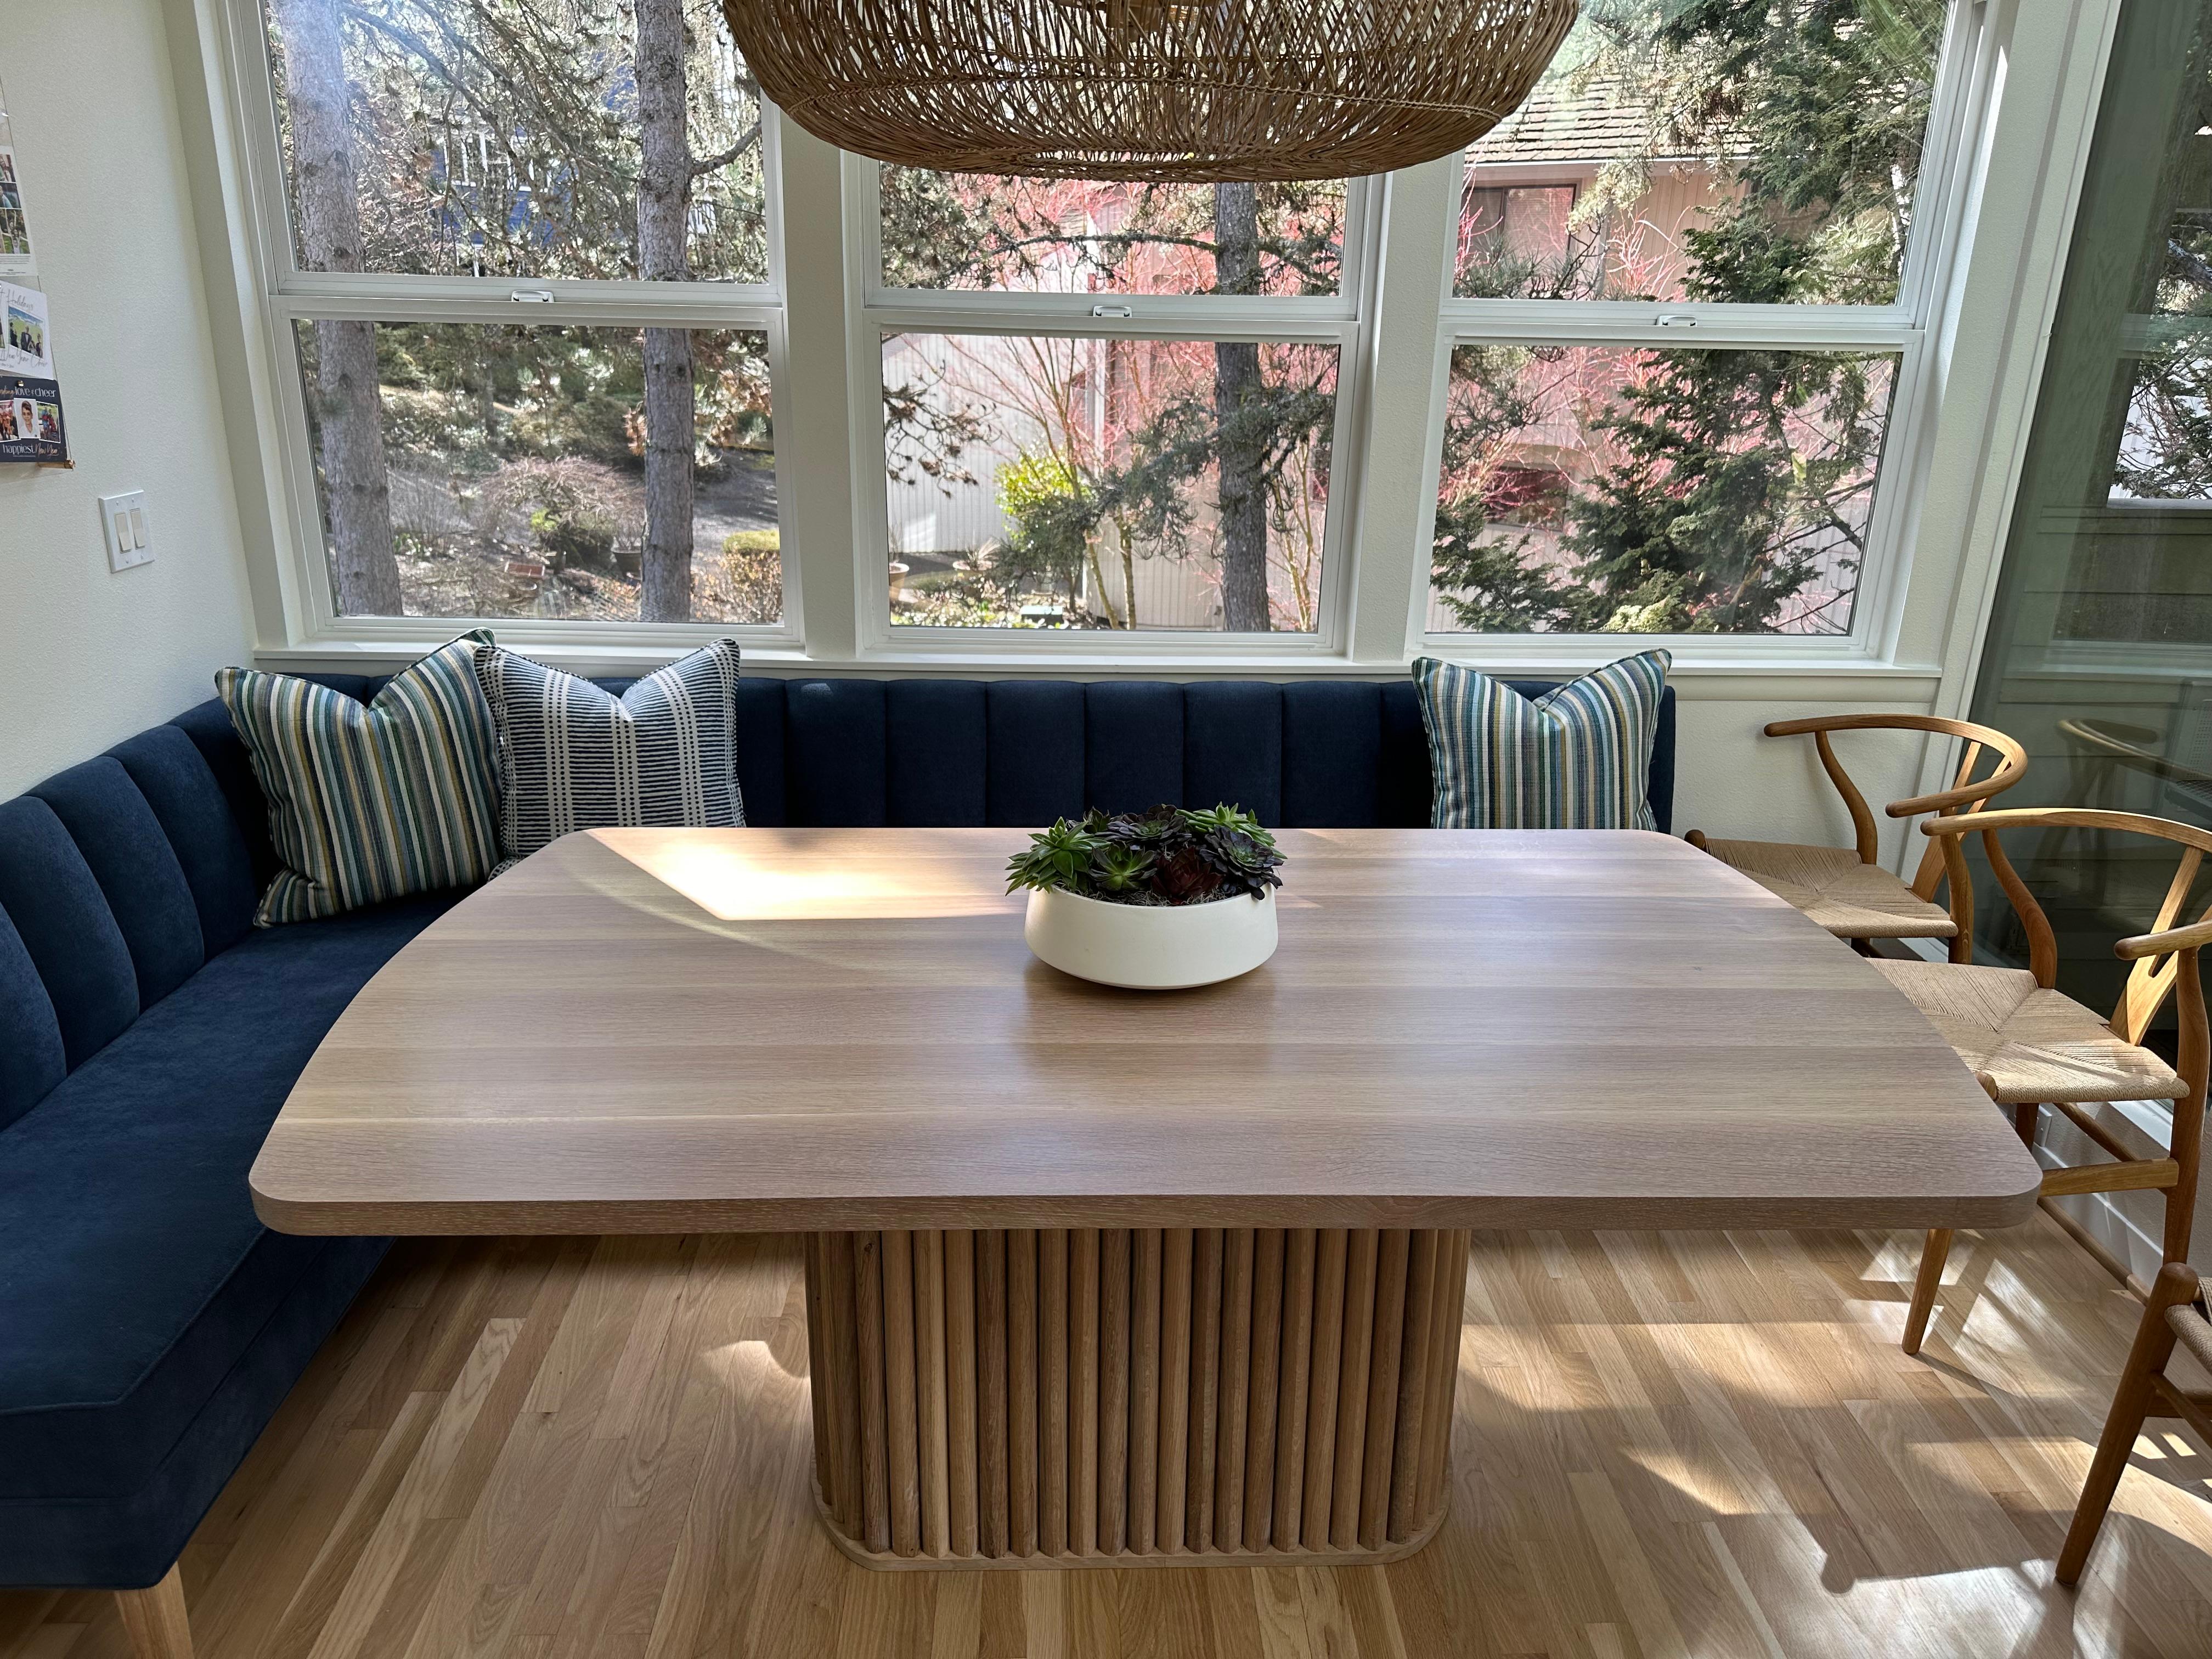 Cette magnifique table de salle à manger est fabriquée en chêne blanc massif de l'Oregon récolté dans la vallée de Willamette. Le plateau est en chêne blanc scié par rift, ce qui permet d'obtenir des veines élégantes et d'une grande régularité. Son